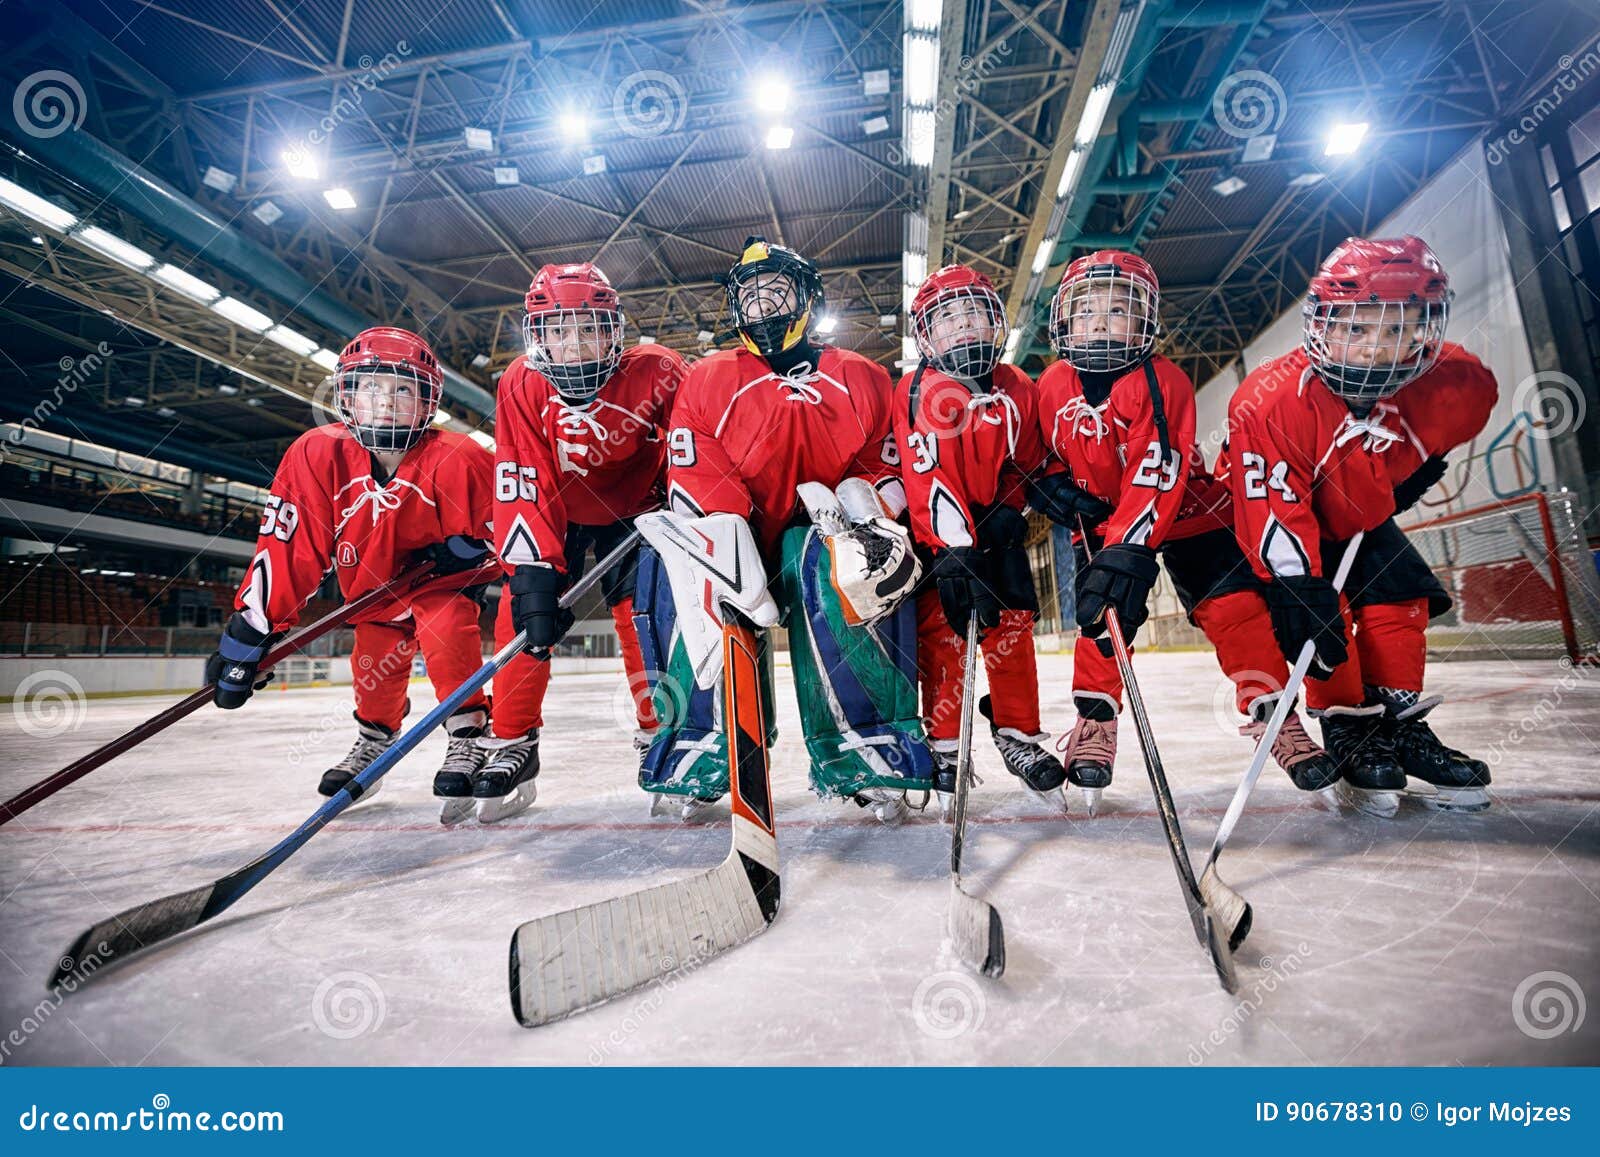 youth hockey team - children play hockey